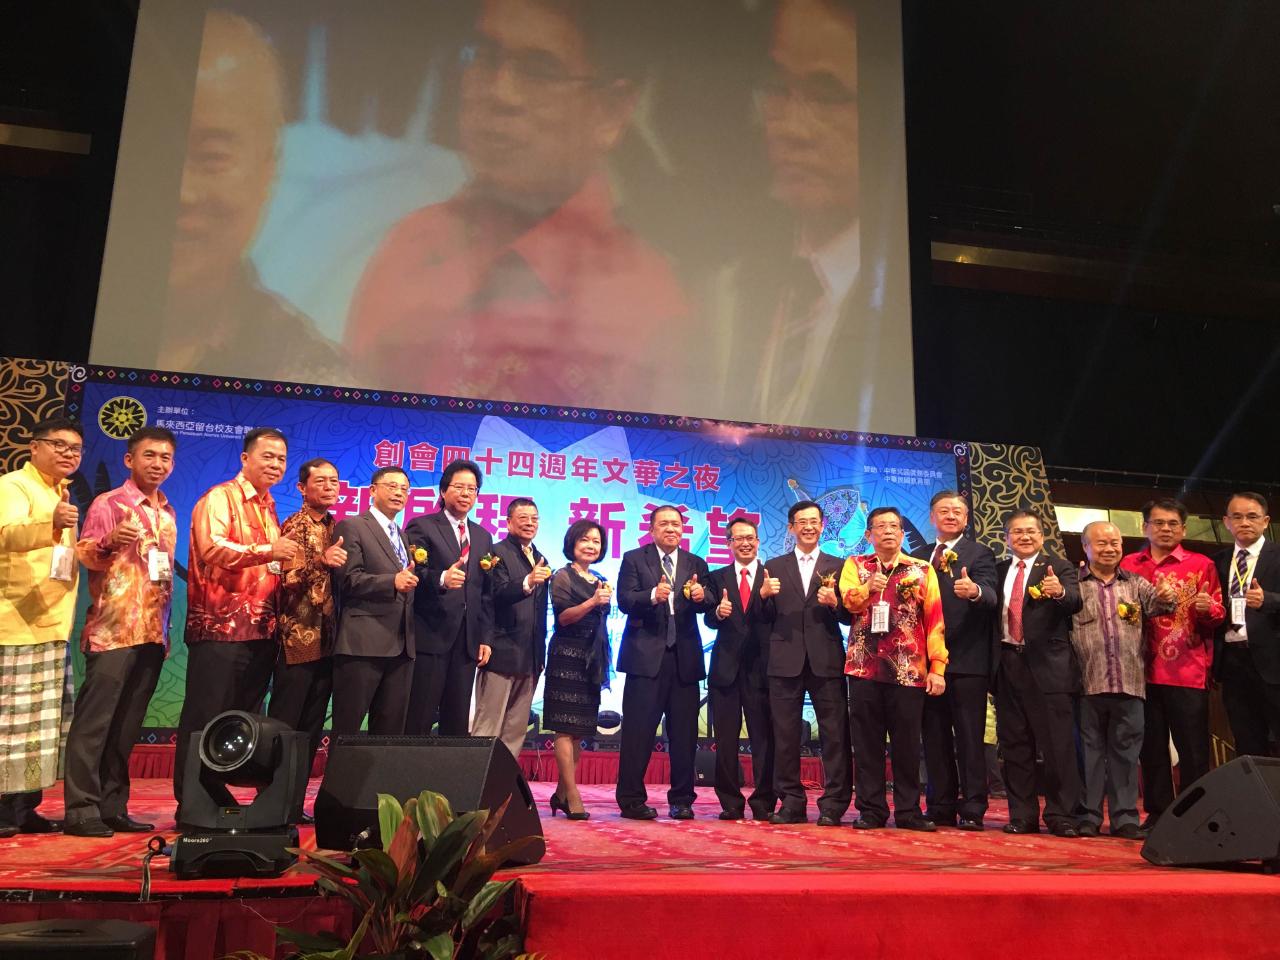 Gabungan Persatuan Alumni Universiti Taiwan, Malaysia ulang tahun ke-44 Mandarin Night  semua mengambil gambar bersama-sama.